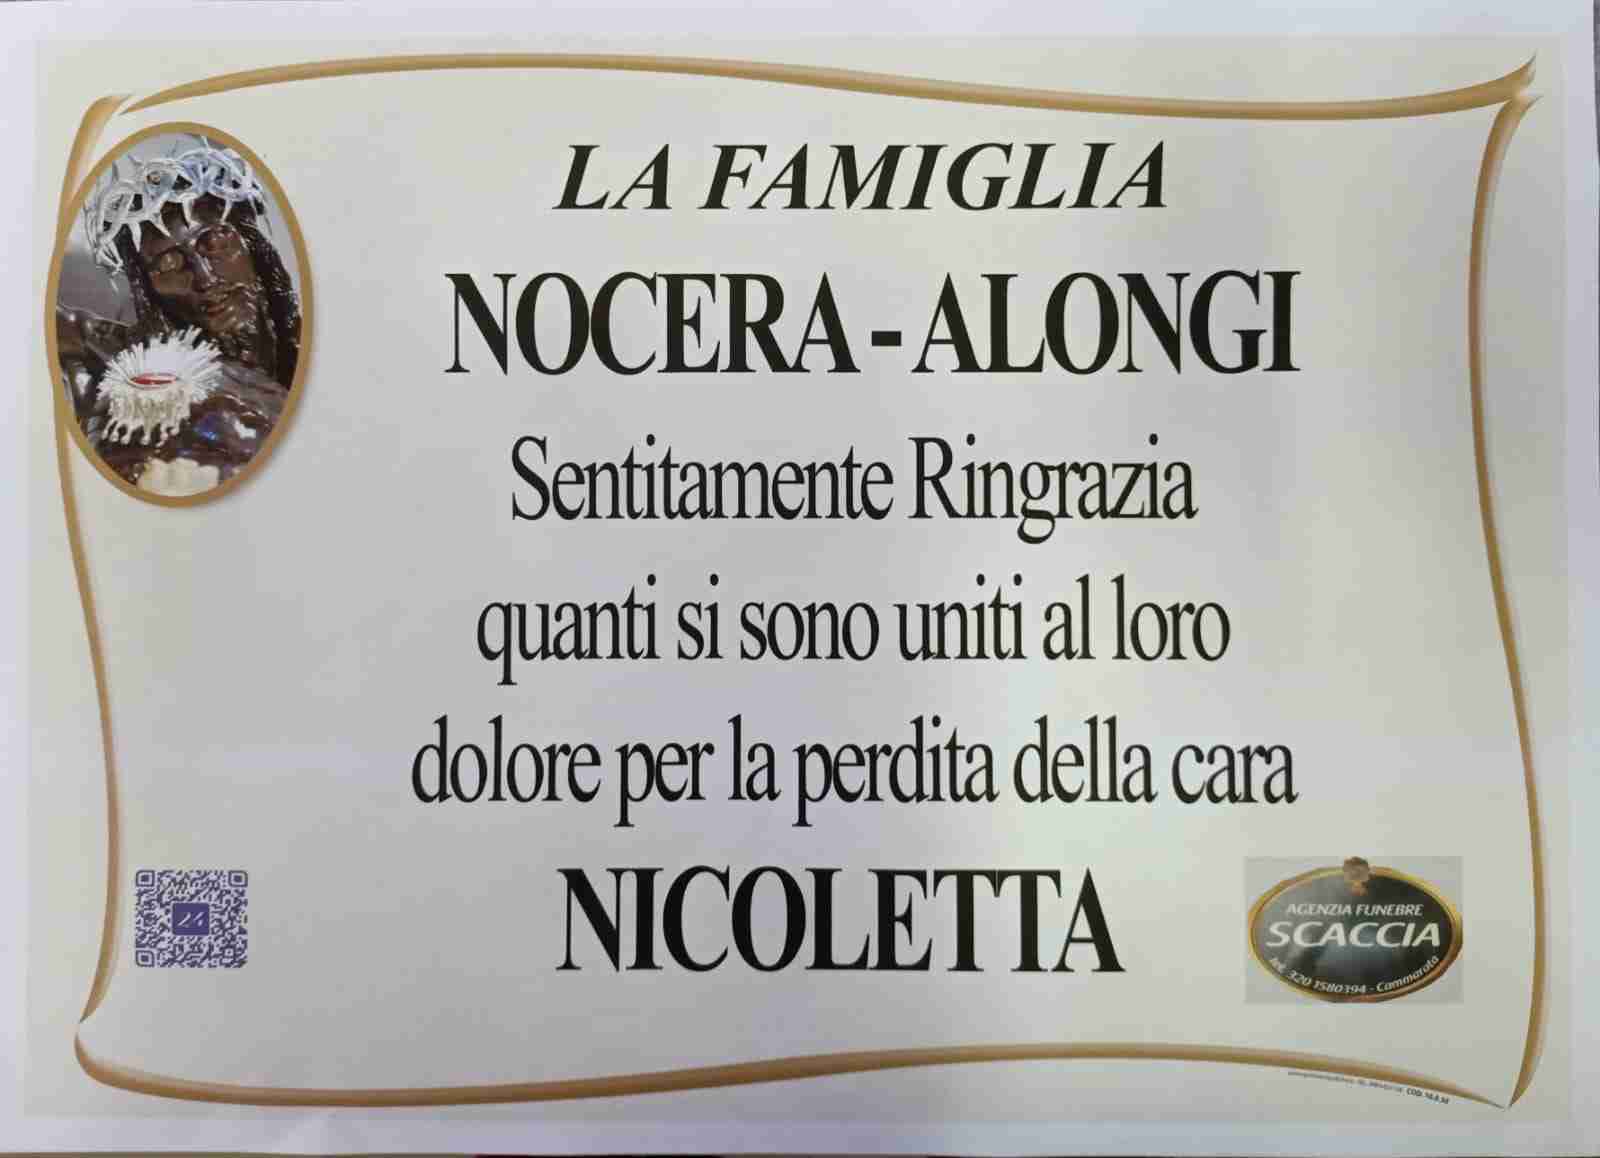 Nicoletta Nocera